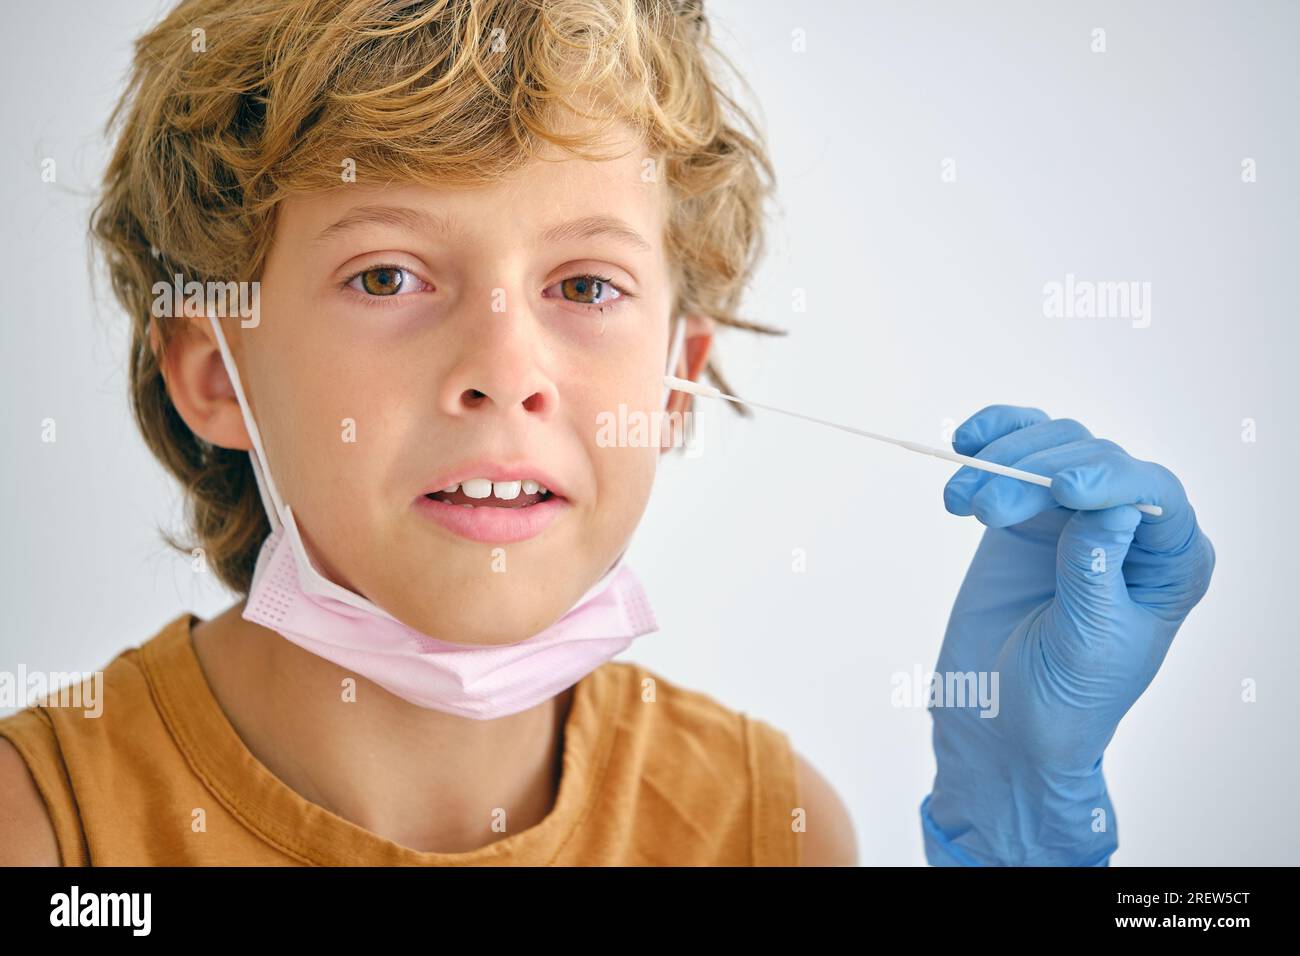 Ritaglia il medico anonimo con il tampone che tocca la guancia di un bambino sensibile che guarda la fotocamera durante il test del coronavirus su sfondo chiaro Foto Stock